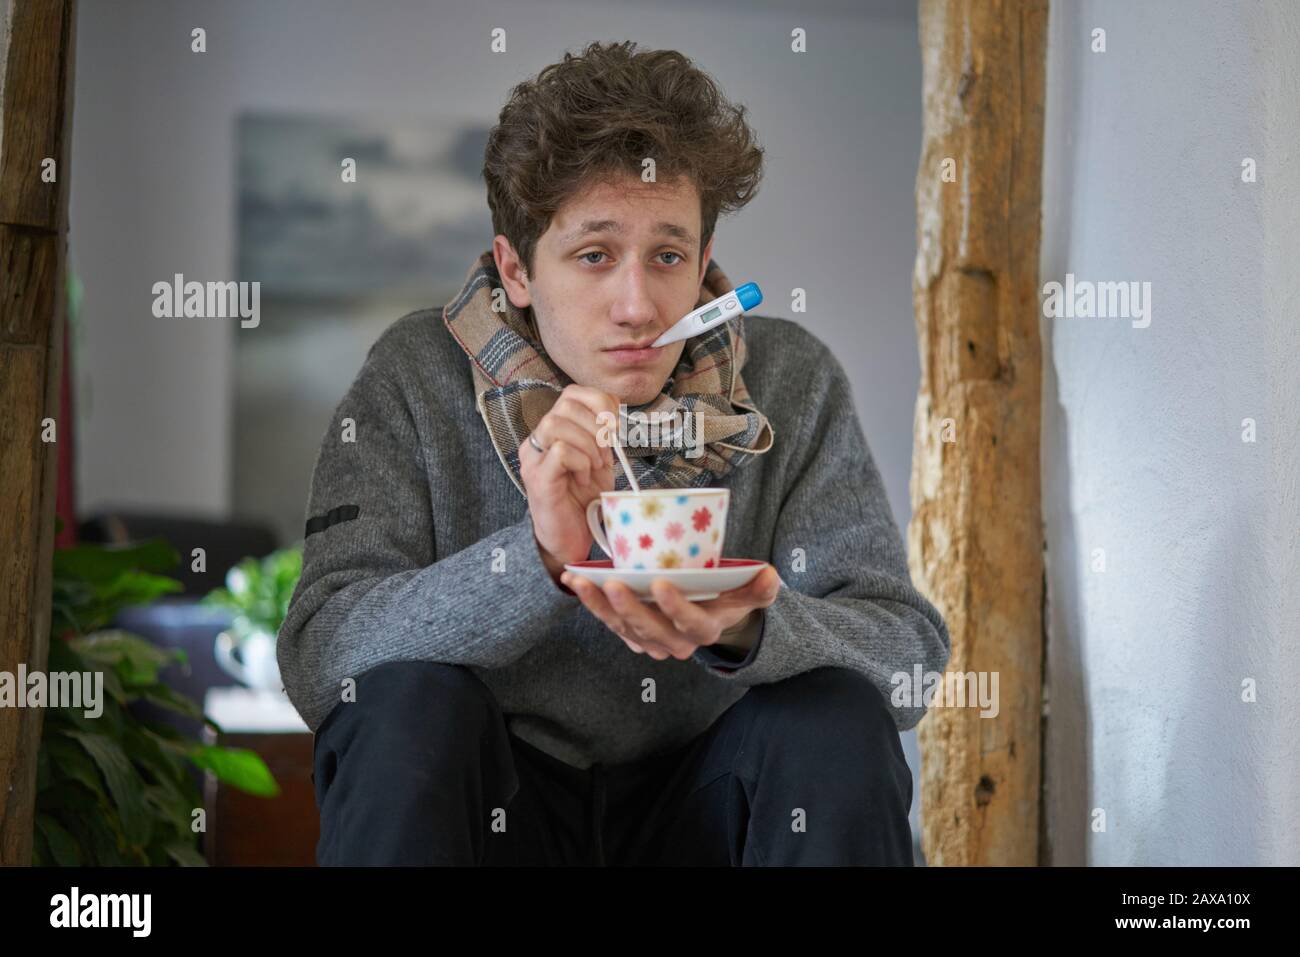 Un giovane malato con un freddo seduto in casa ha un termometro in bocca e sta tenendo una tazza in mano Foto Stock